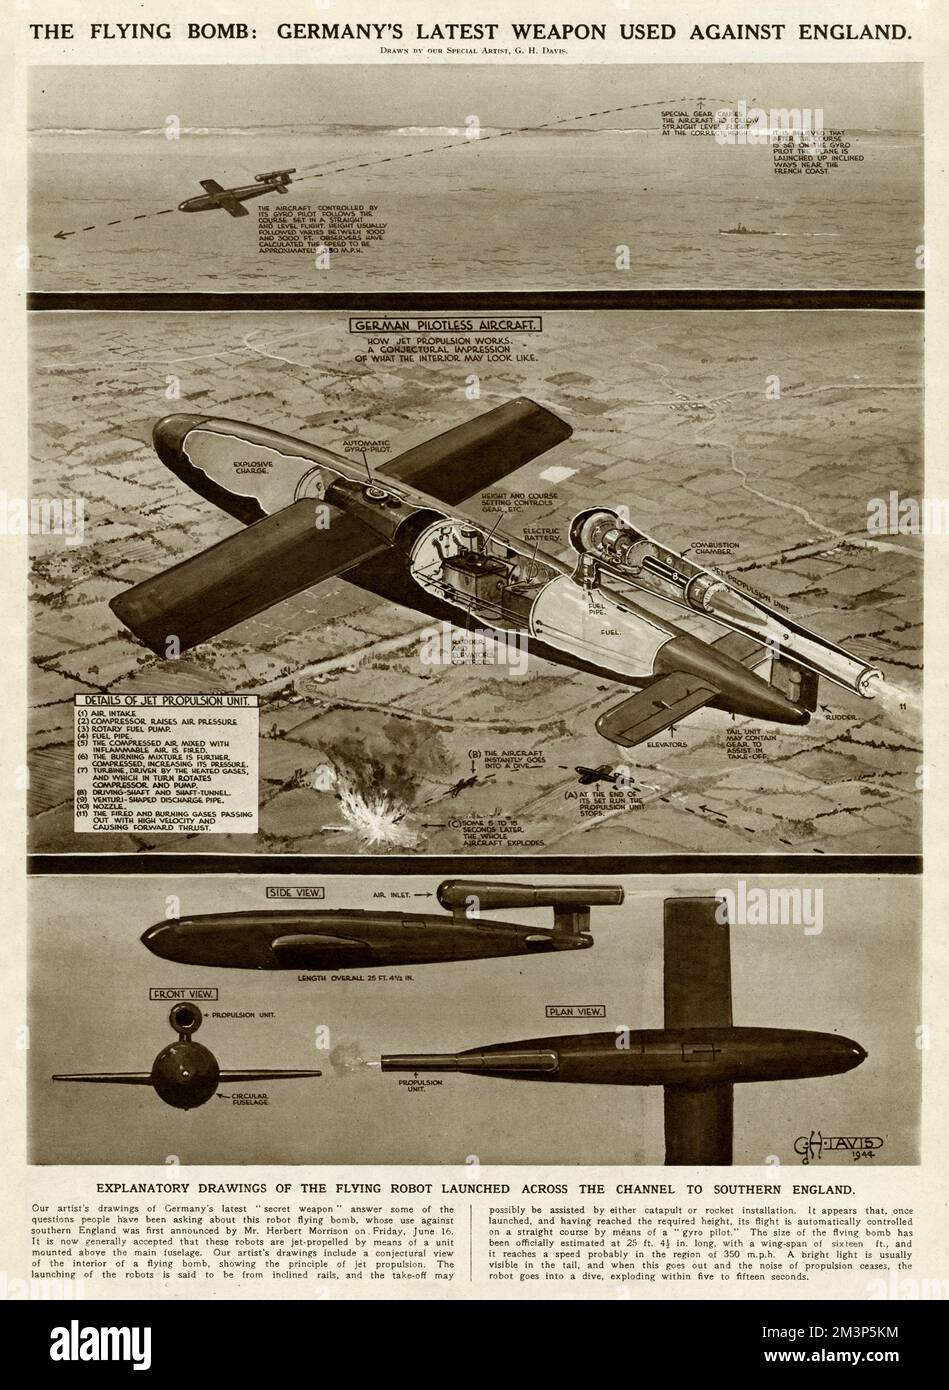 Die Flugbombe: Deutschlands neueste Waffe, die während des Zweiten Weltkriegs gegen England eingesetzt wurde. Erläuternde Zeichnungen des fliegenden Roboters, der über den Kanal nach Südengland gestartet wurde. Stockfoto